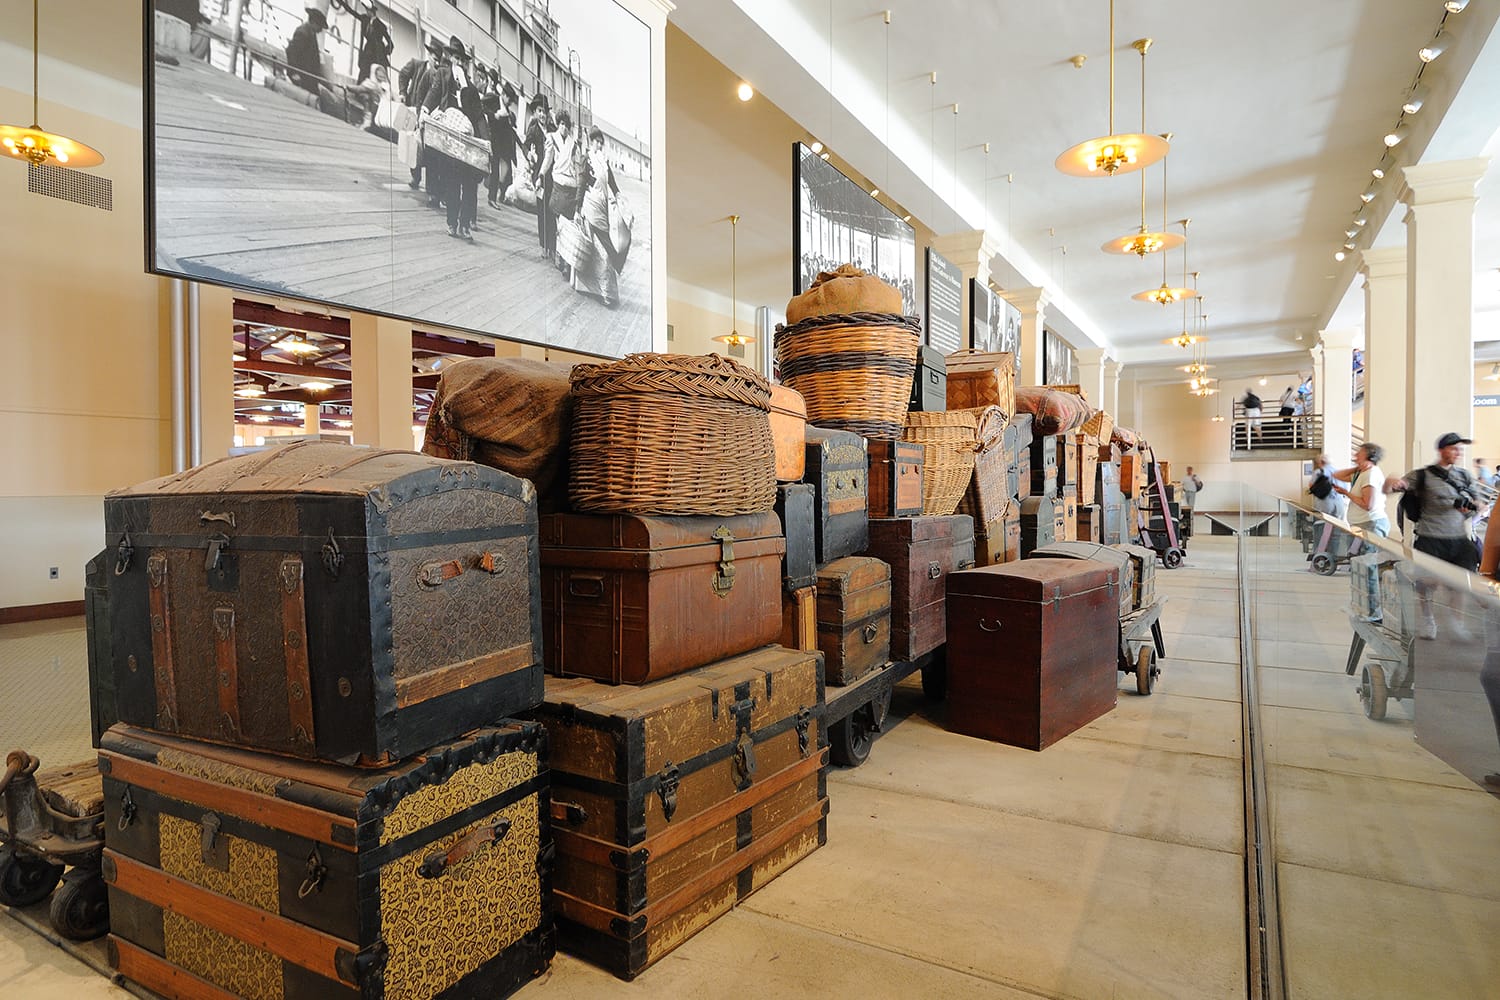 Vintage luggage on display at the Ellis Island Museum